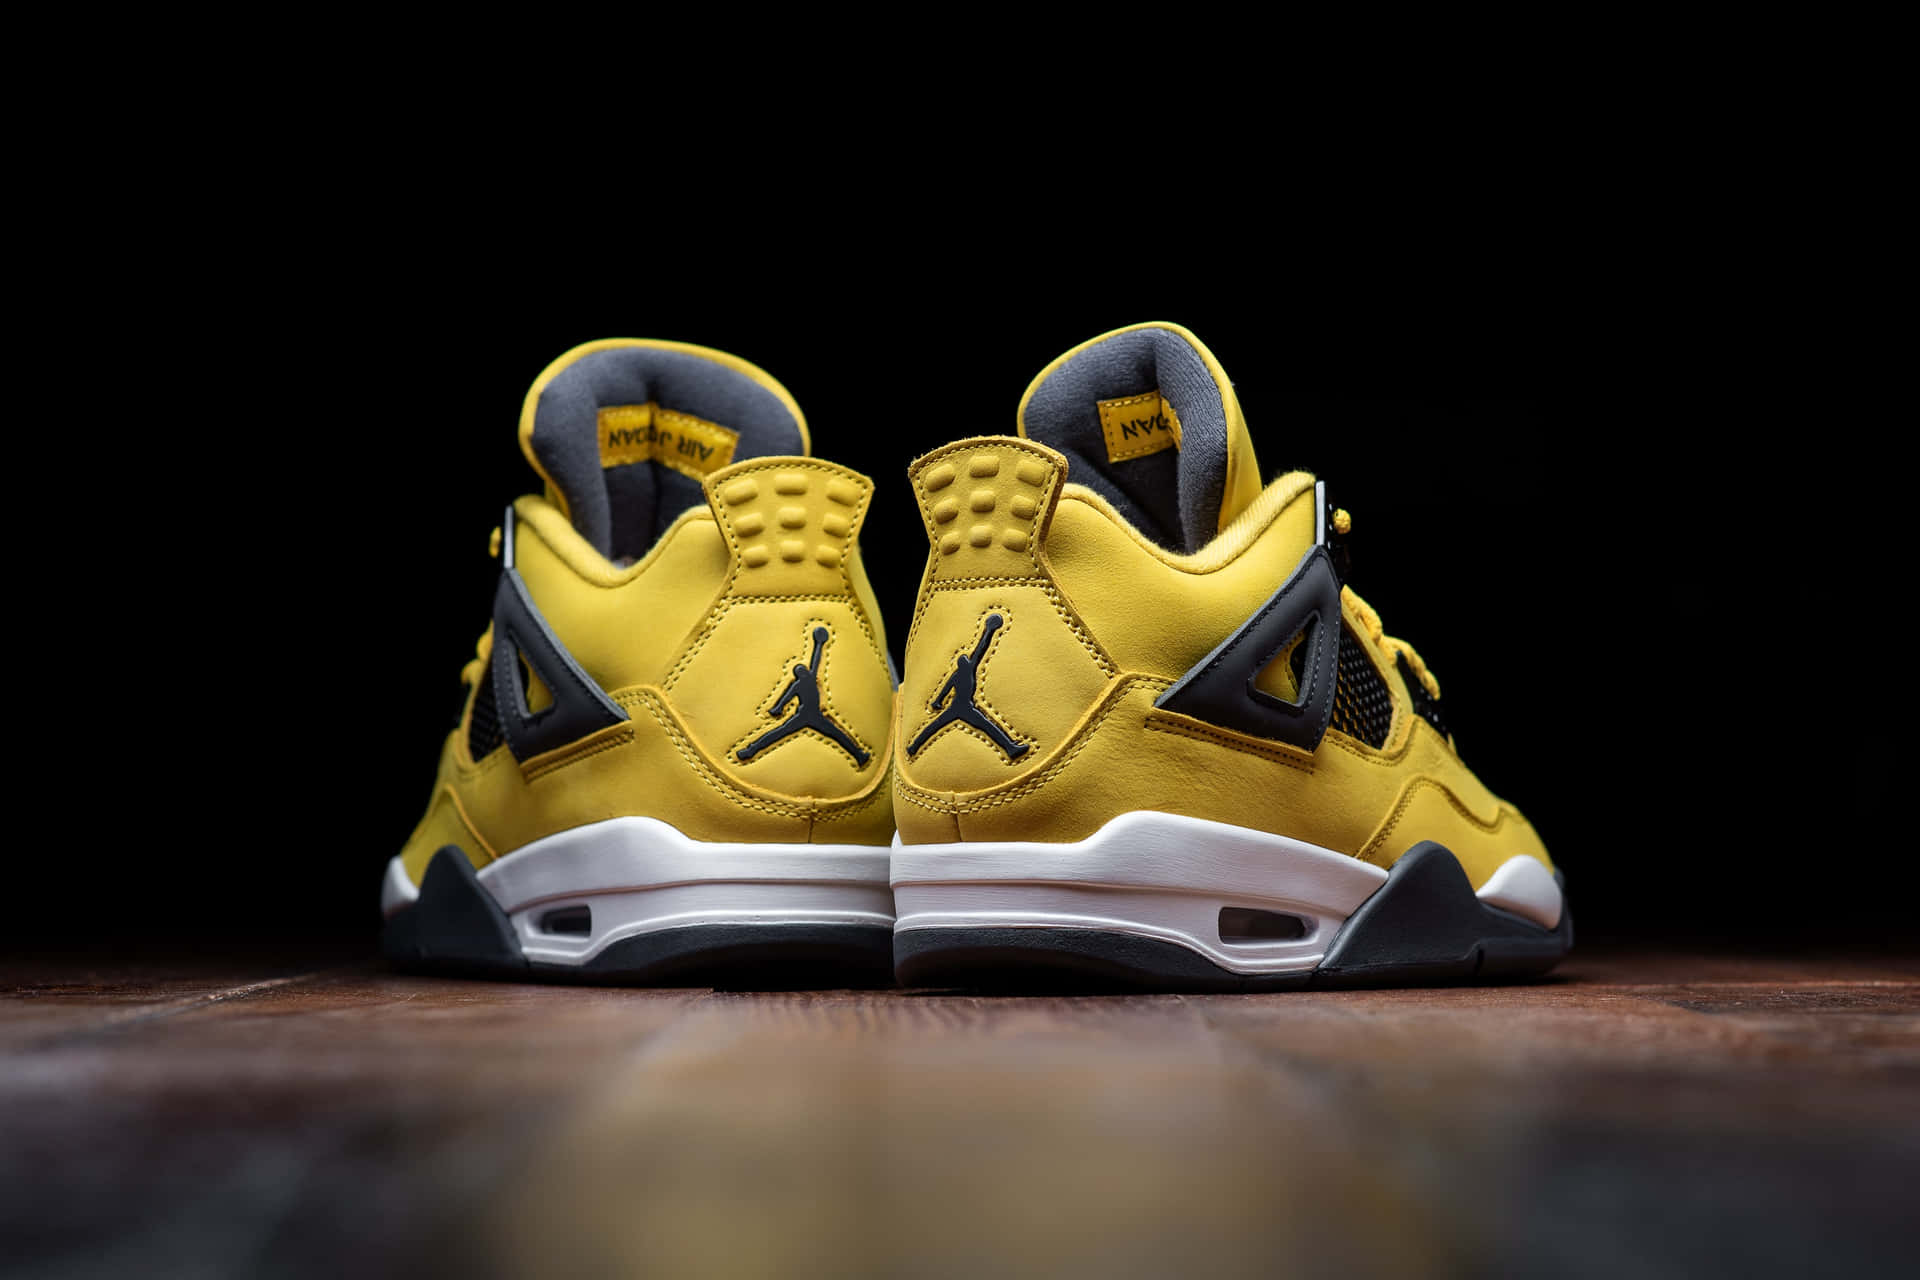 Bildbringe Deinen Street-style Mit Diesen Lit Gelben Jordan Sneakers Zum Leuchten Wallpaper